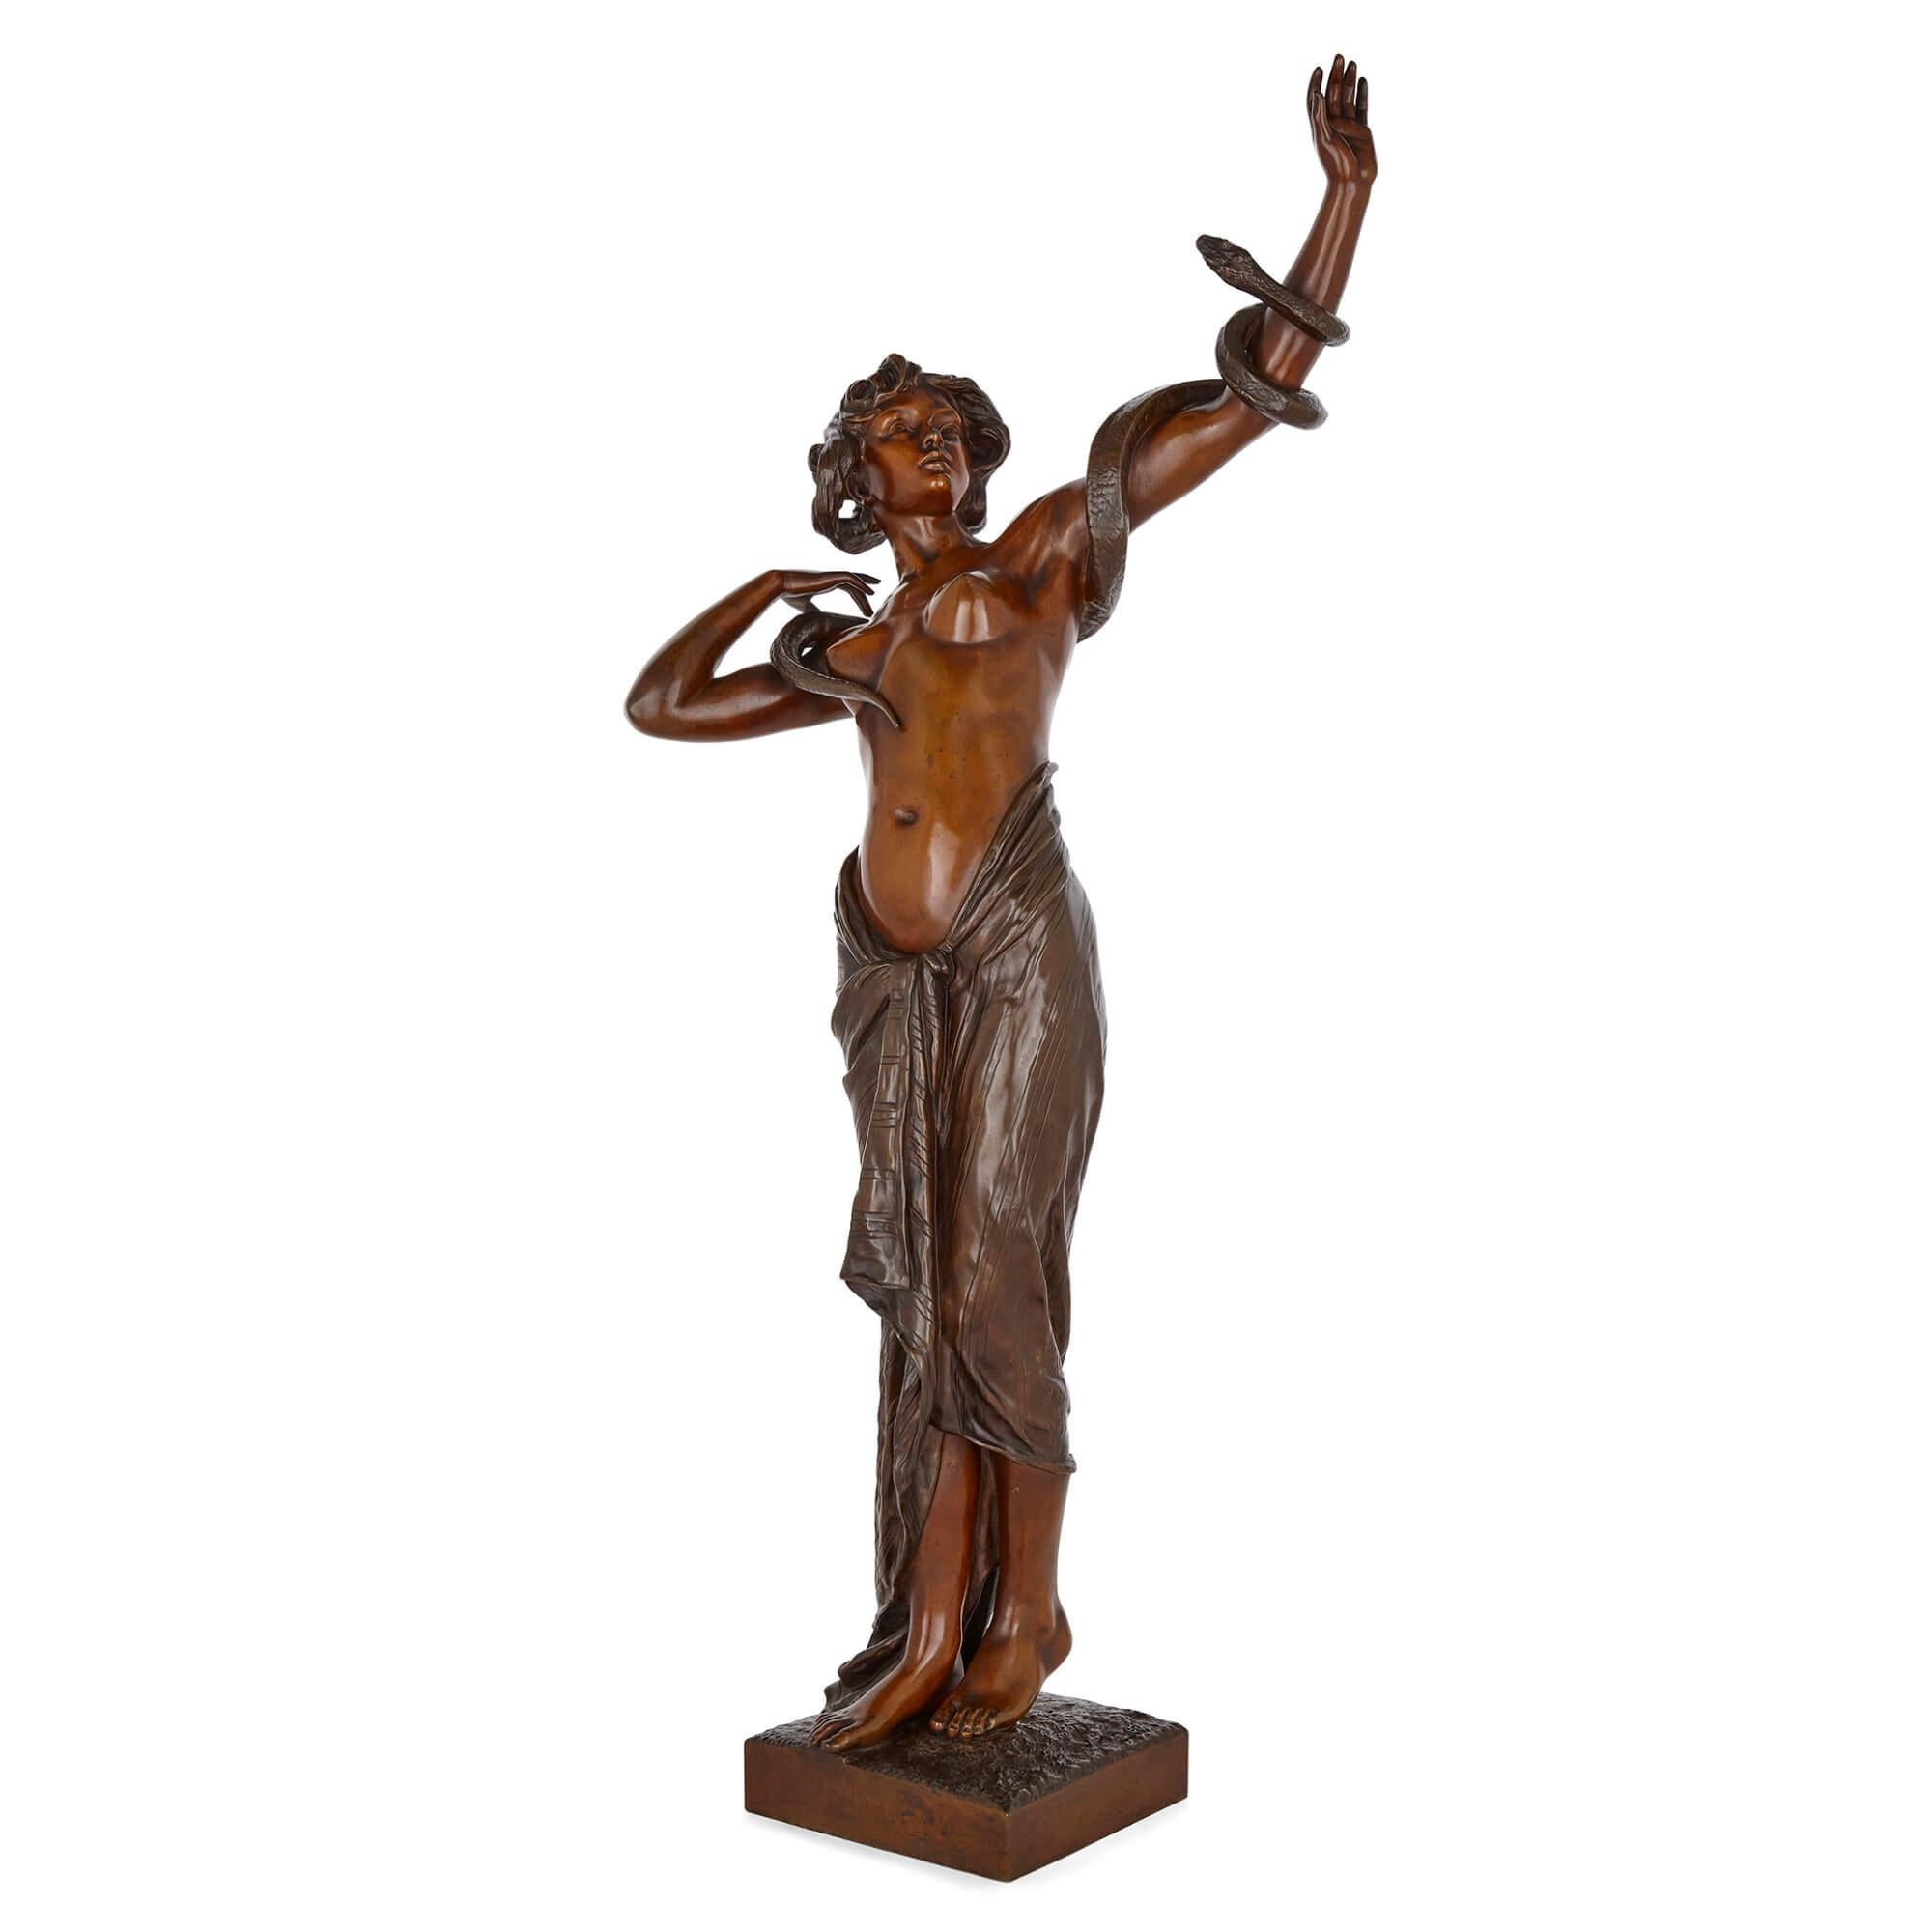 Une grande et rare figure féminine en bronze de Goldscheider
Autrichien, fin du XIXe siècle
Mesures : Hauteur 85cm, largeur 38cm, 25cm

De grande taille et d'autant plus rare qu'elle a été coulée en bronze, cette superbe figure féminine est due